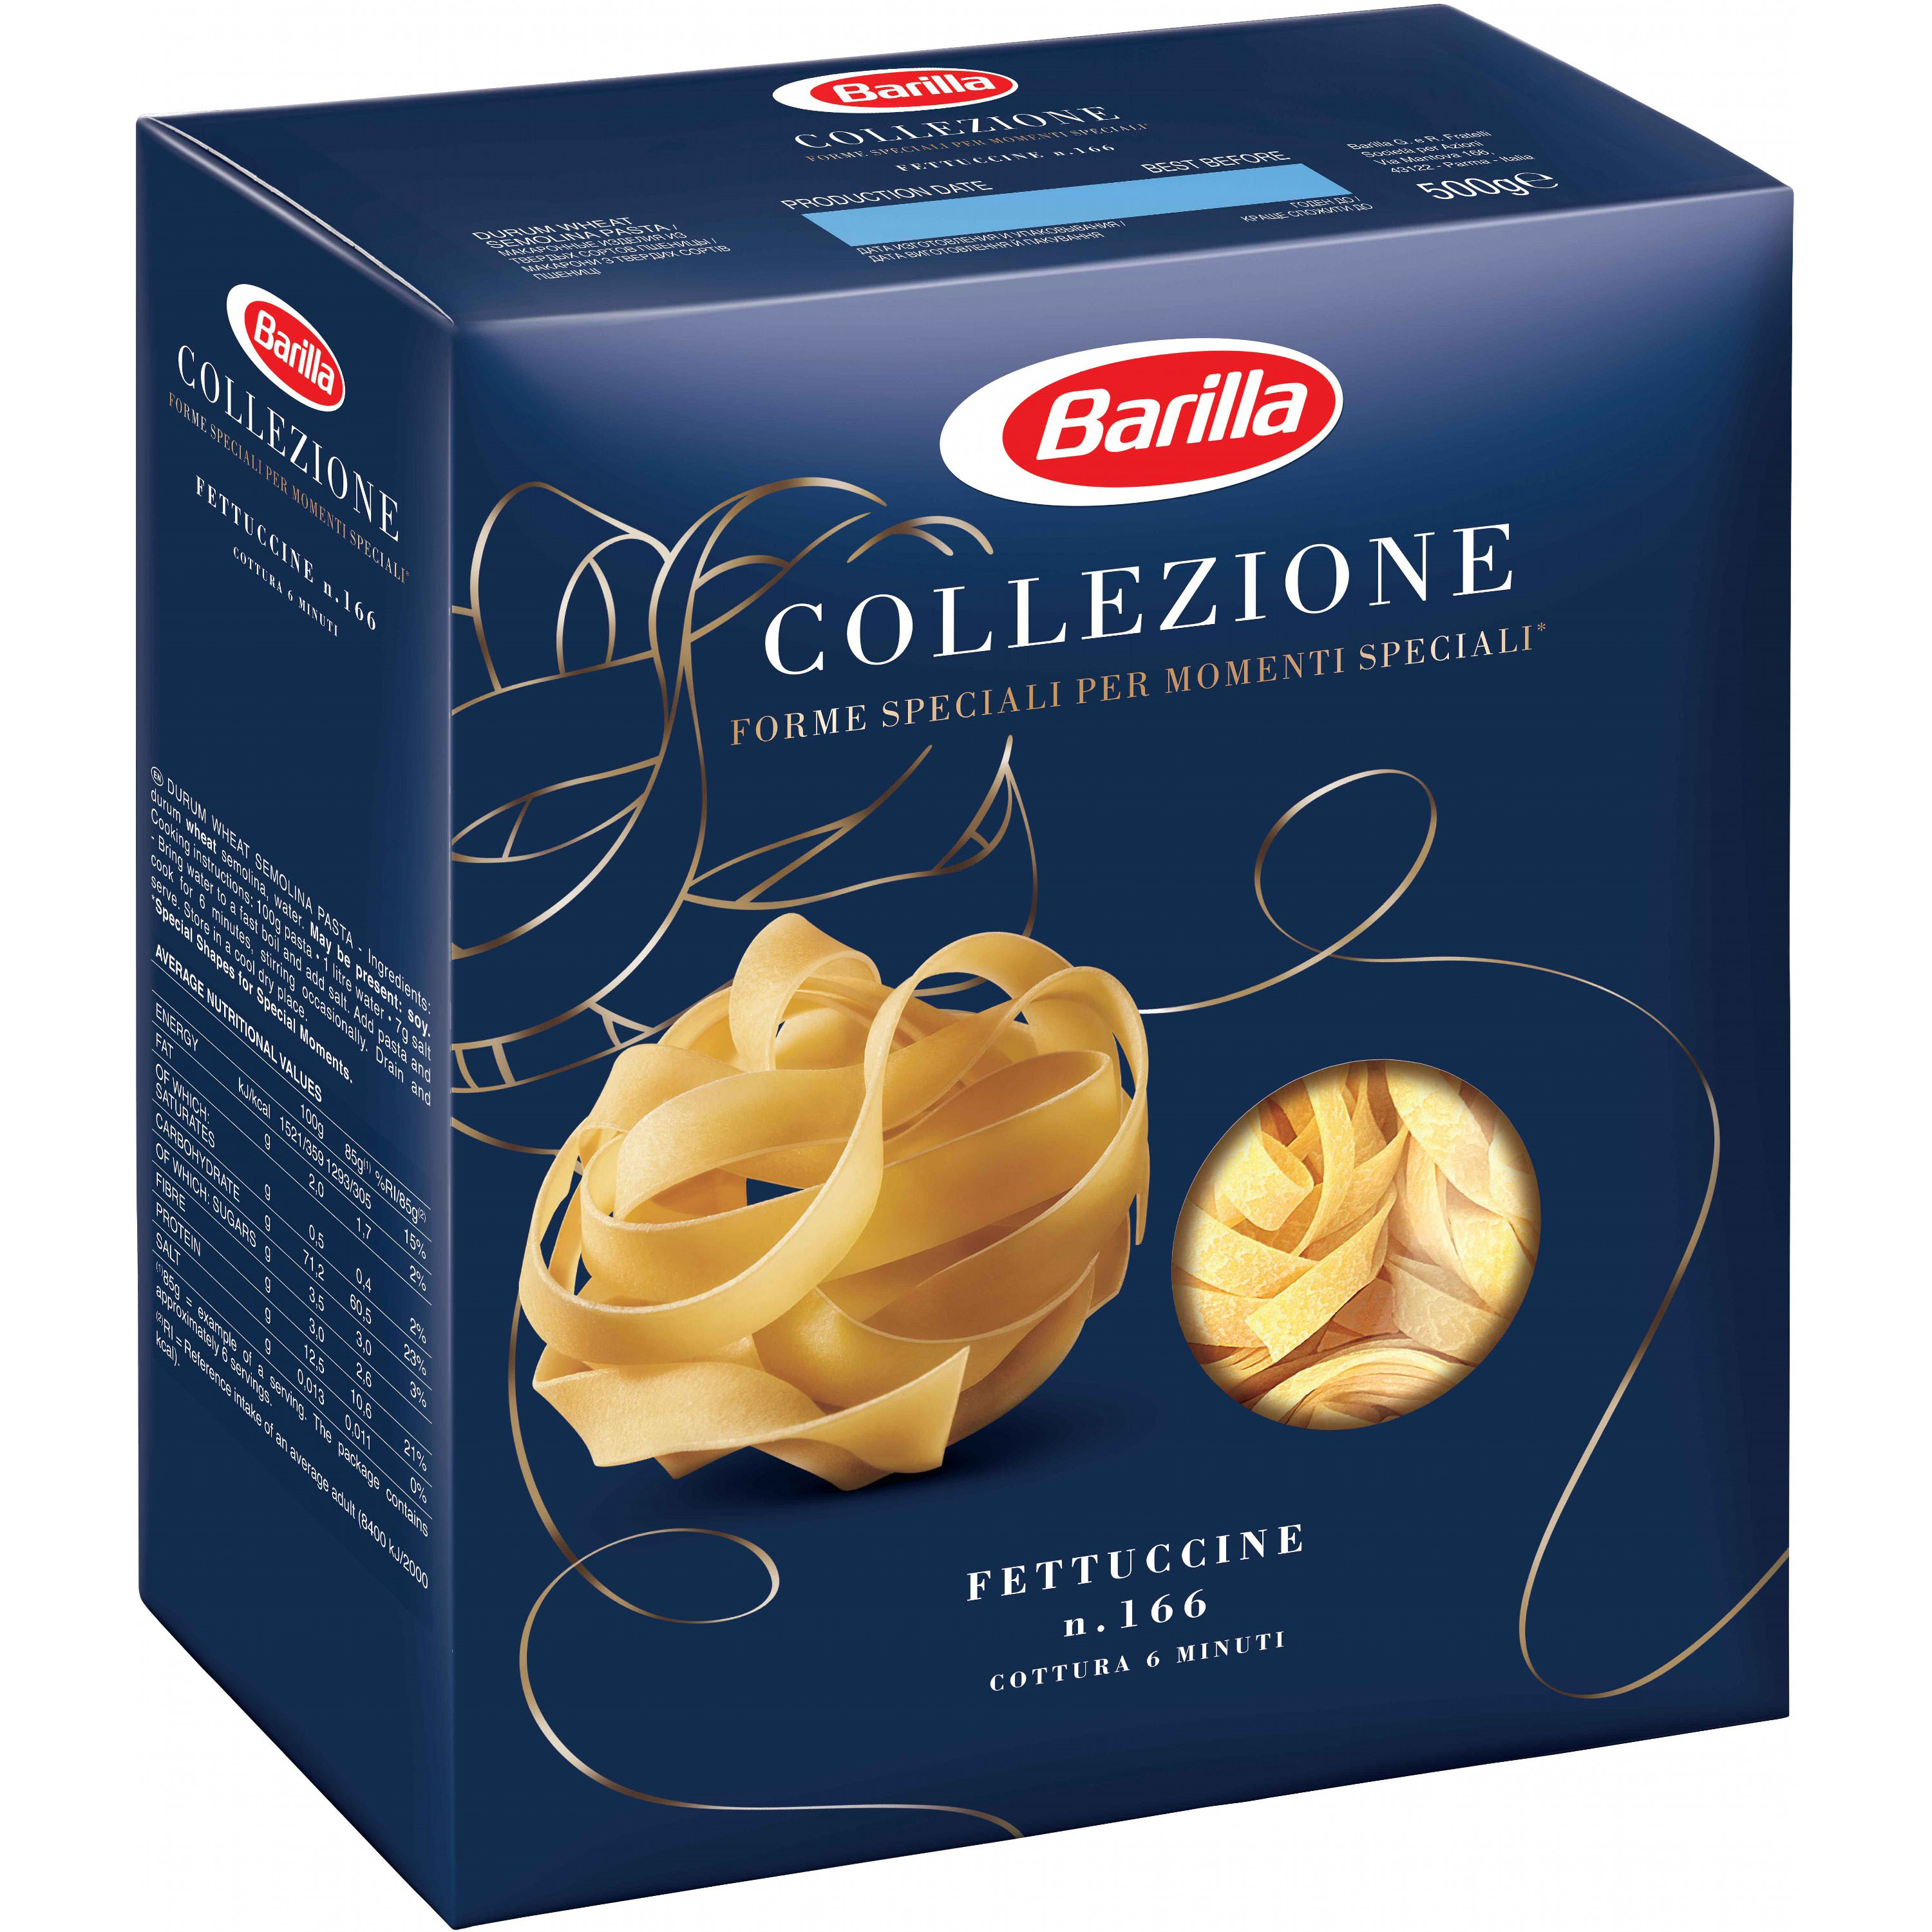 Макаронные изделия Barilla Collezione Fettuccine №166 500 г - фото 4